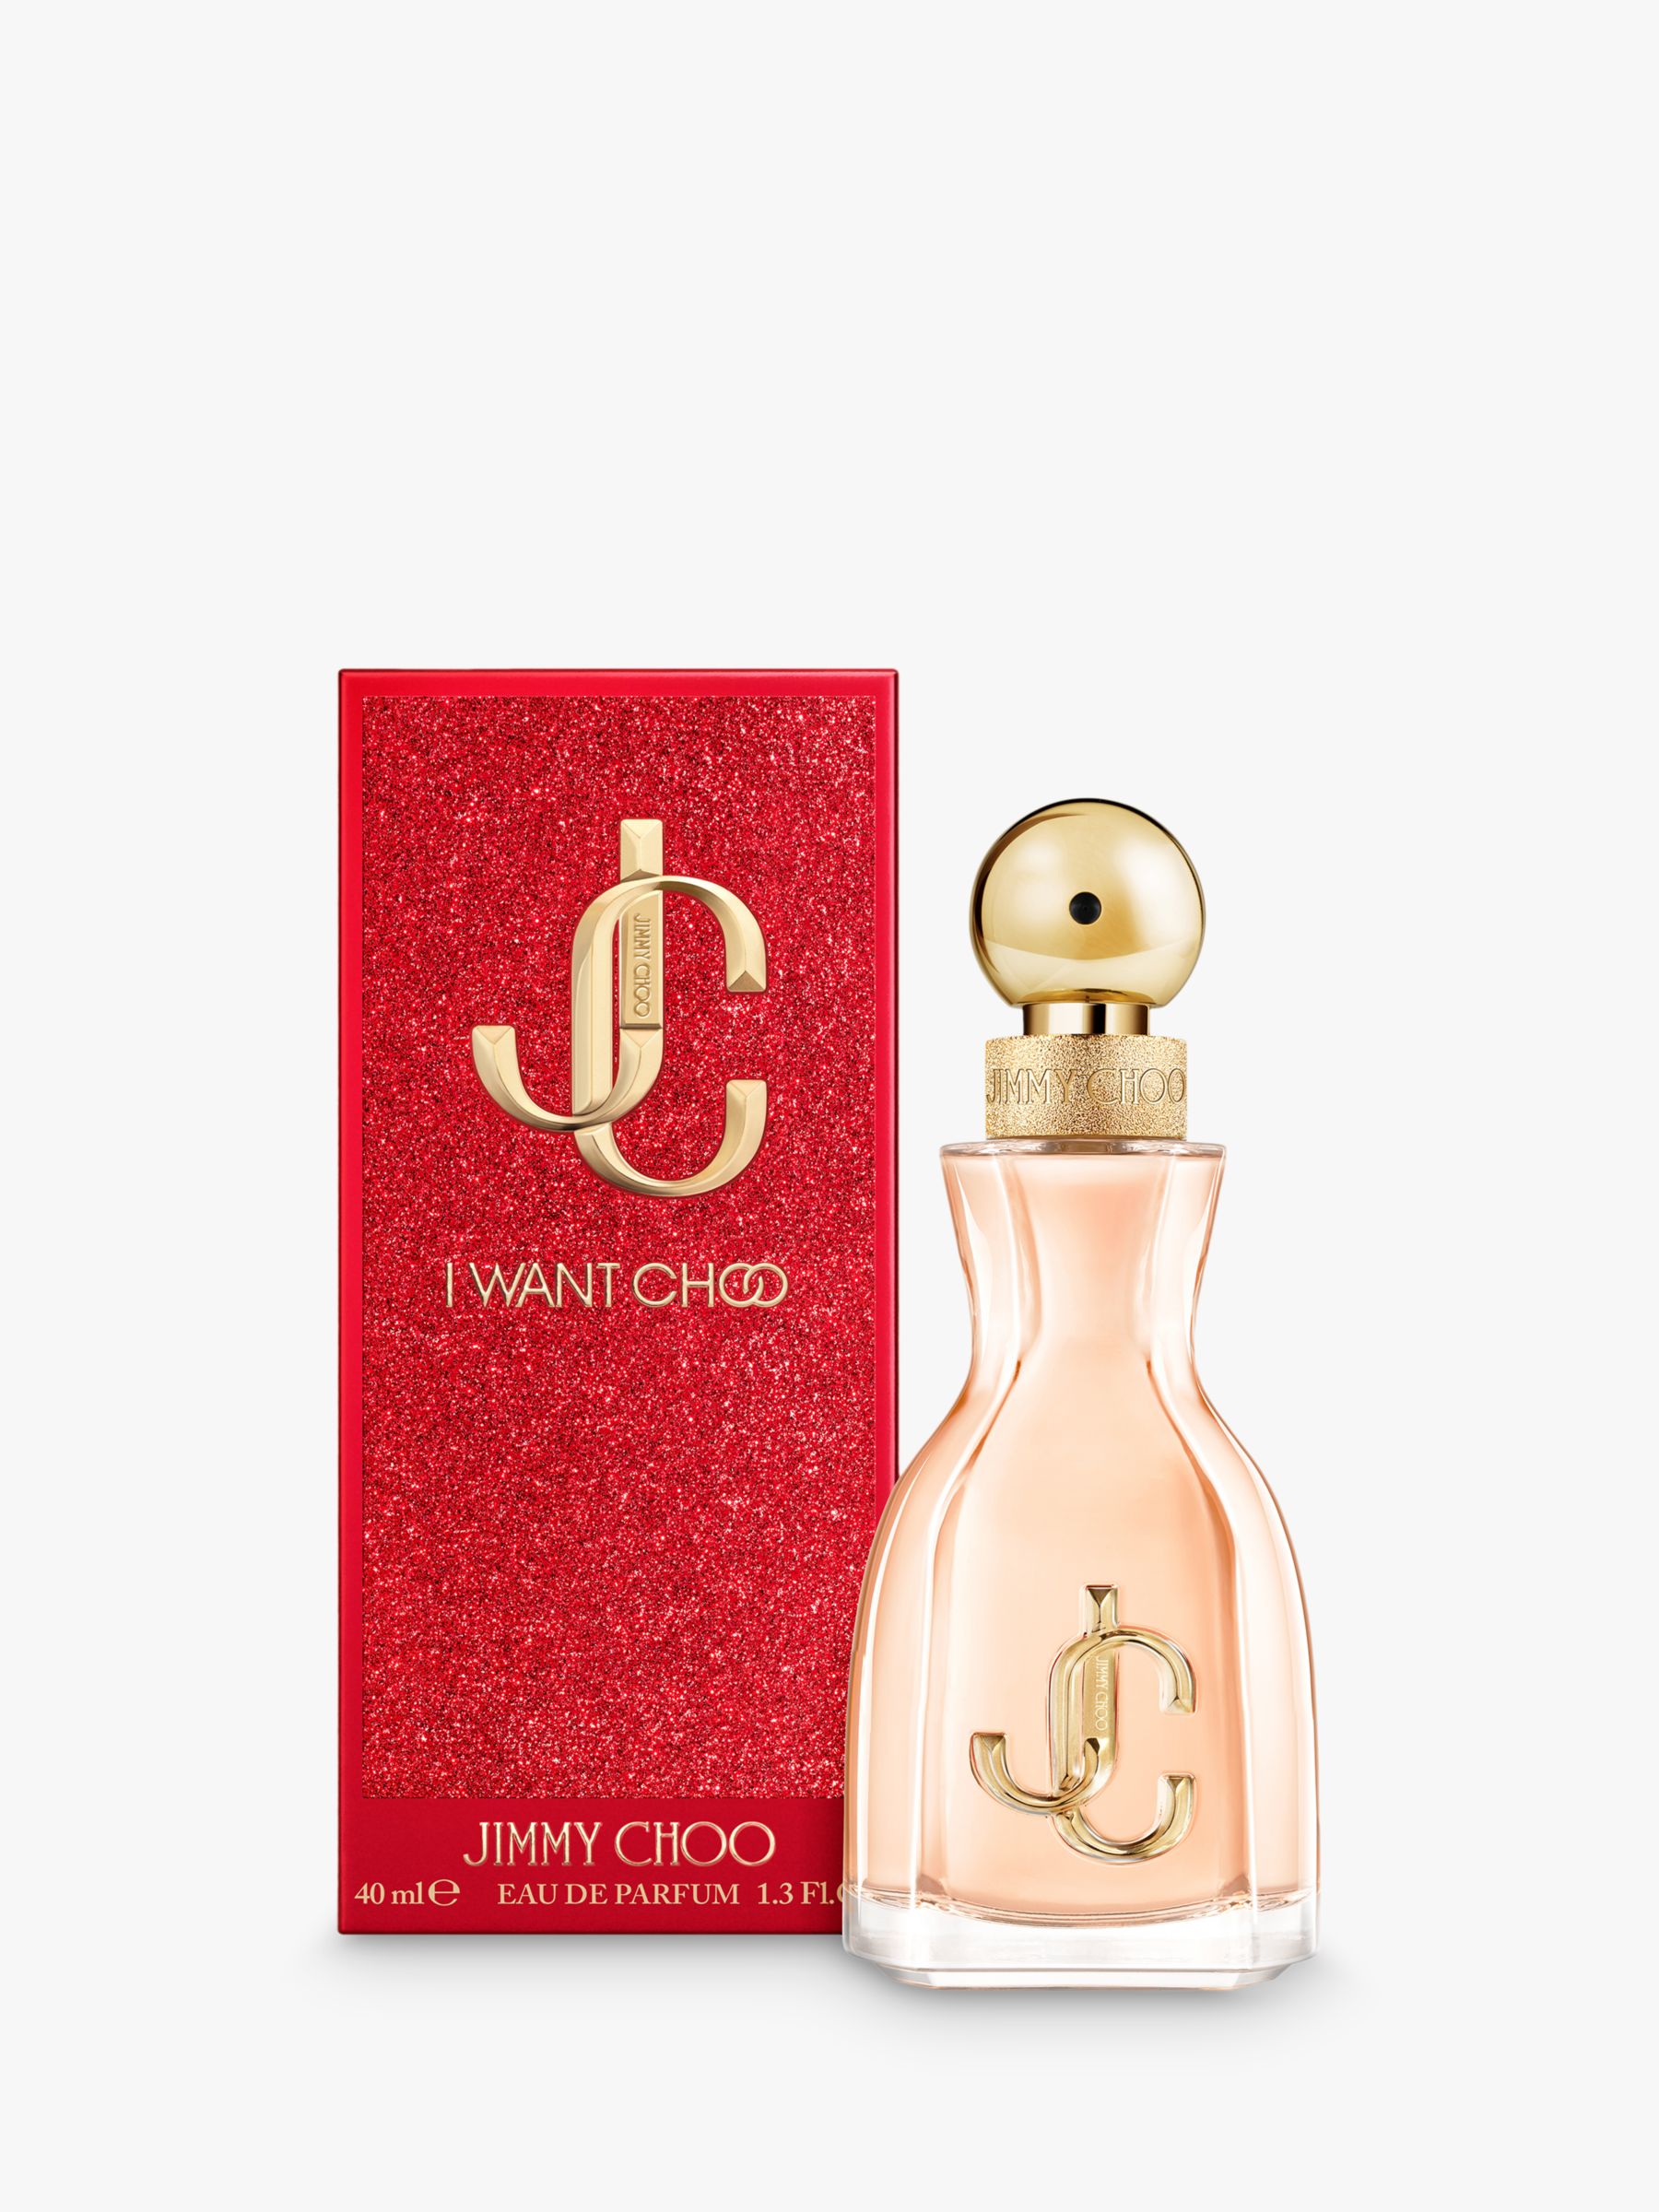 Jimmy Choo I Want Choo Eau de Parfum, 40ml 2